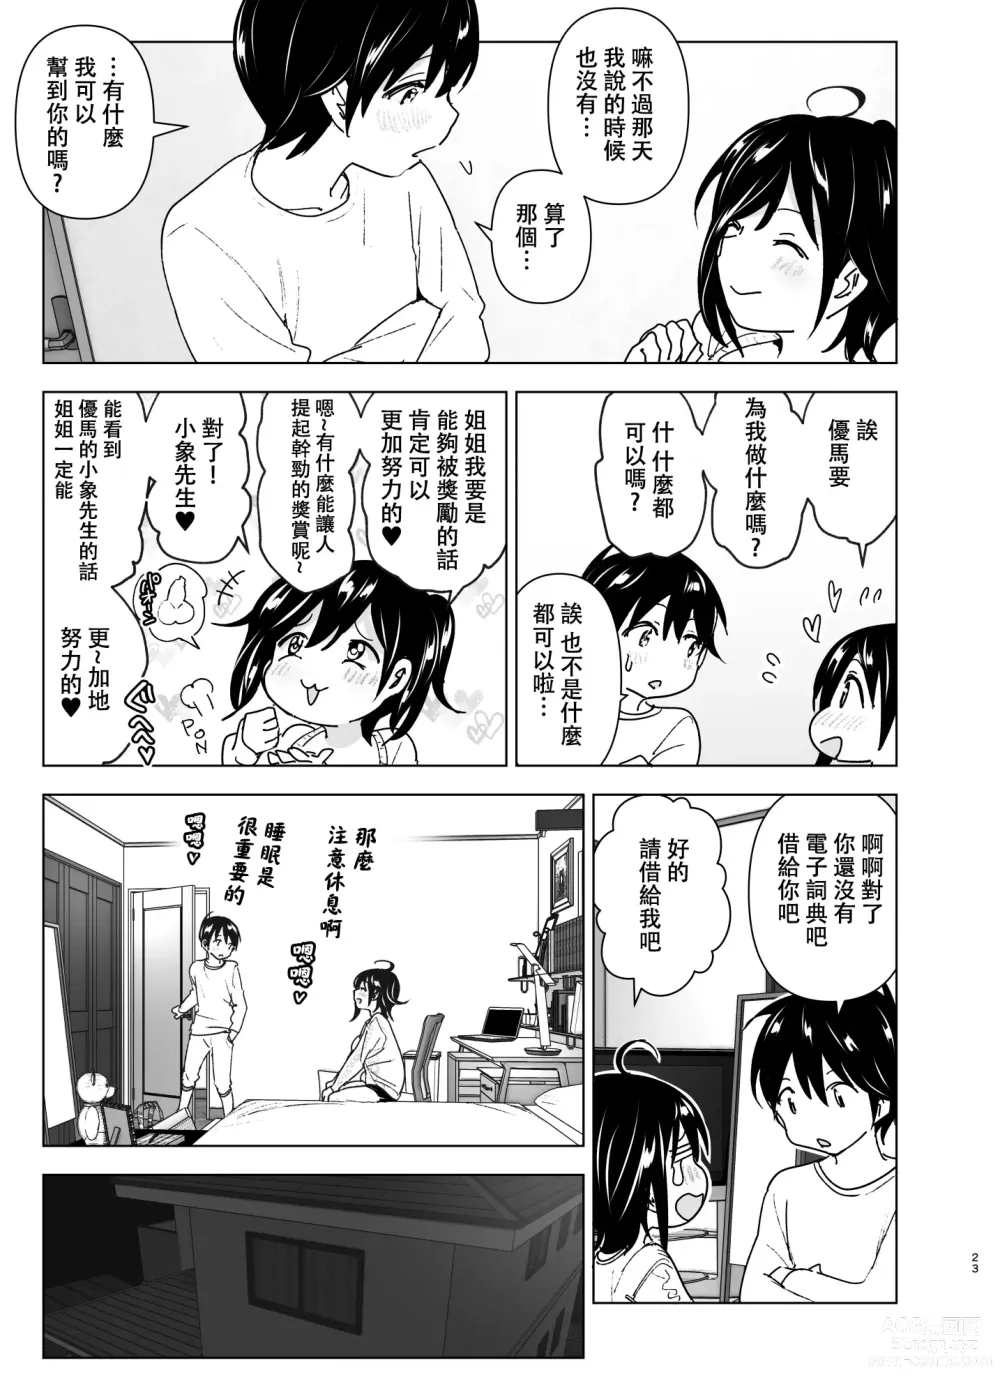 Page 22 of doujinshi 姐姐與傾聽抱怨的弟弟的故事 (decensored)